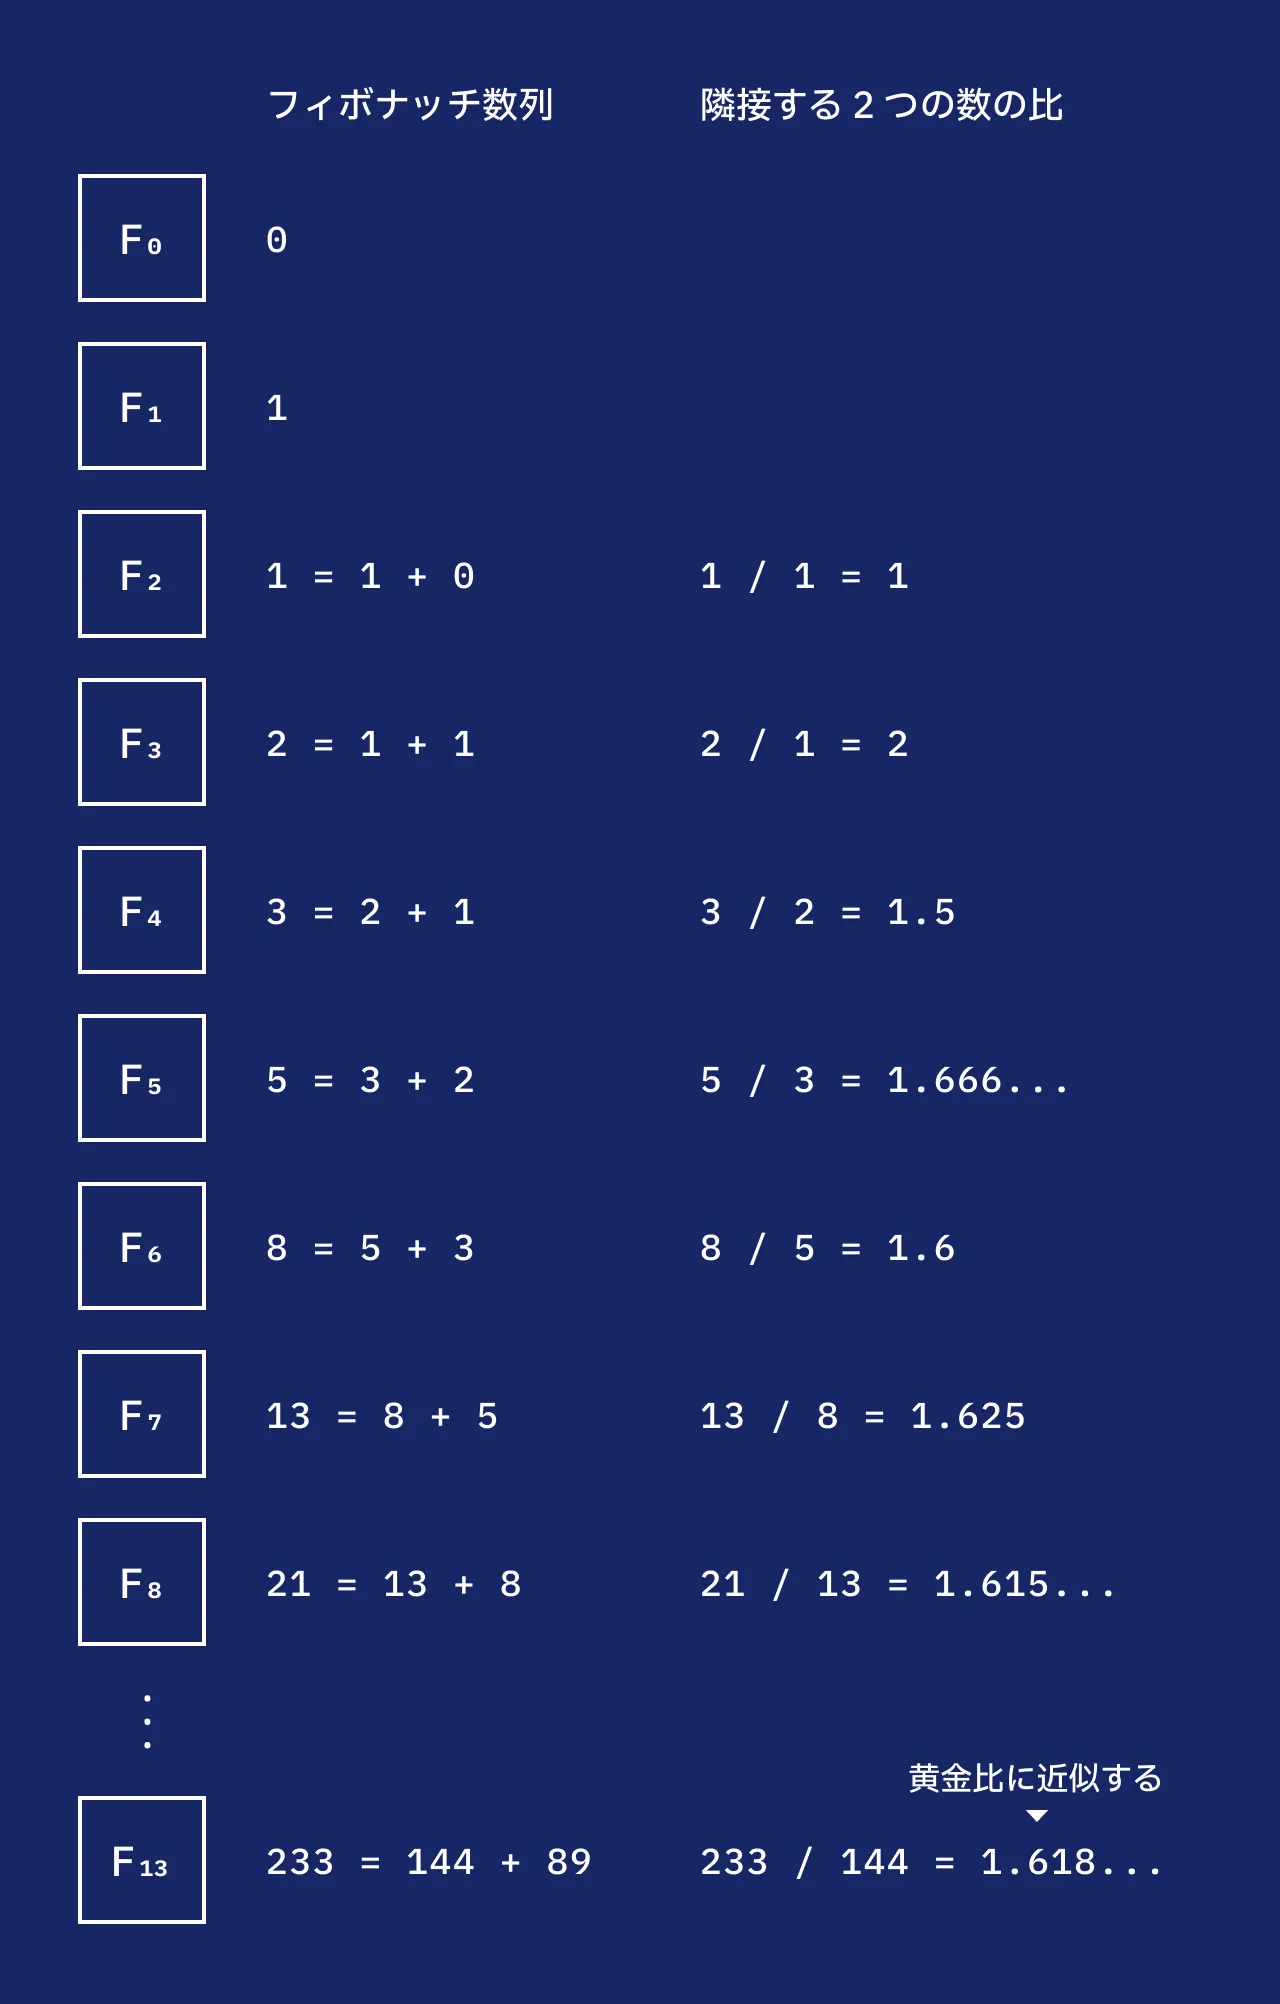 n = 0 から n = 8 までと、n = 13 のフィボナッチ数列、隣接する 2 つの数の比を表した図